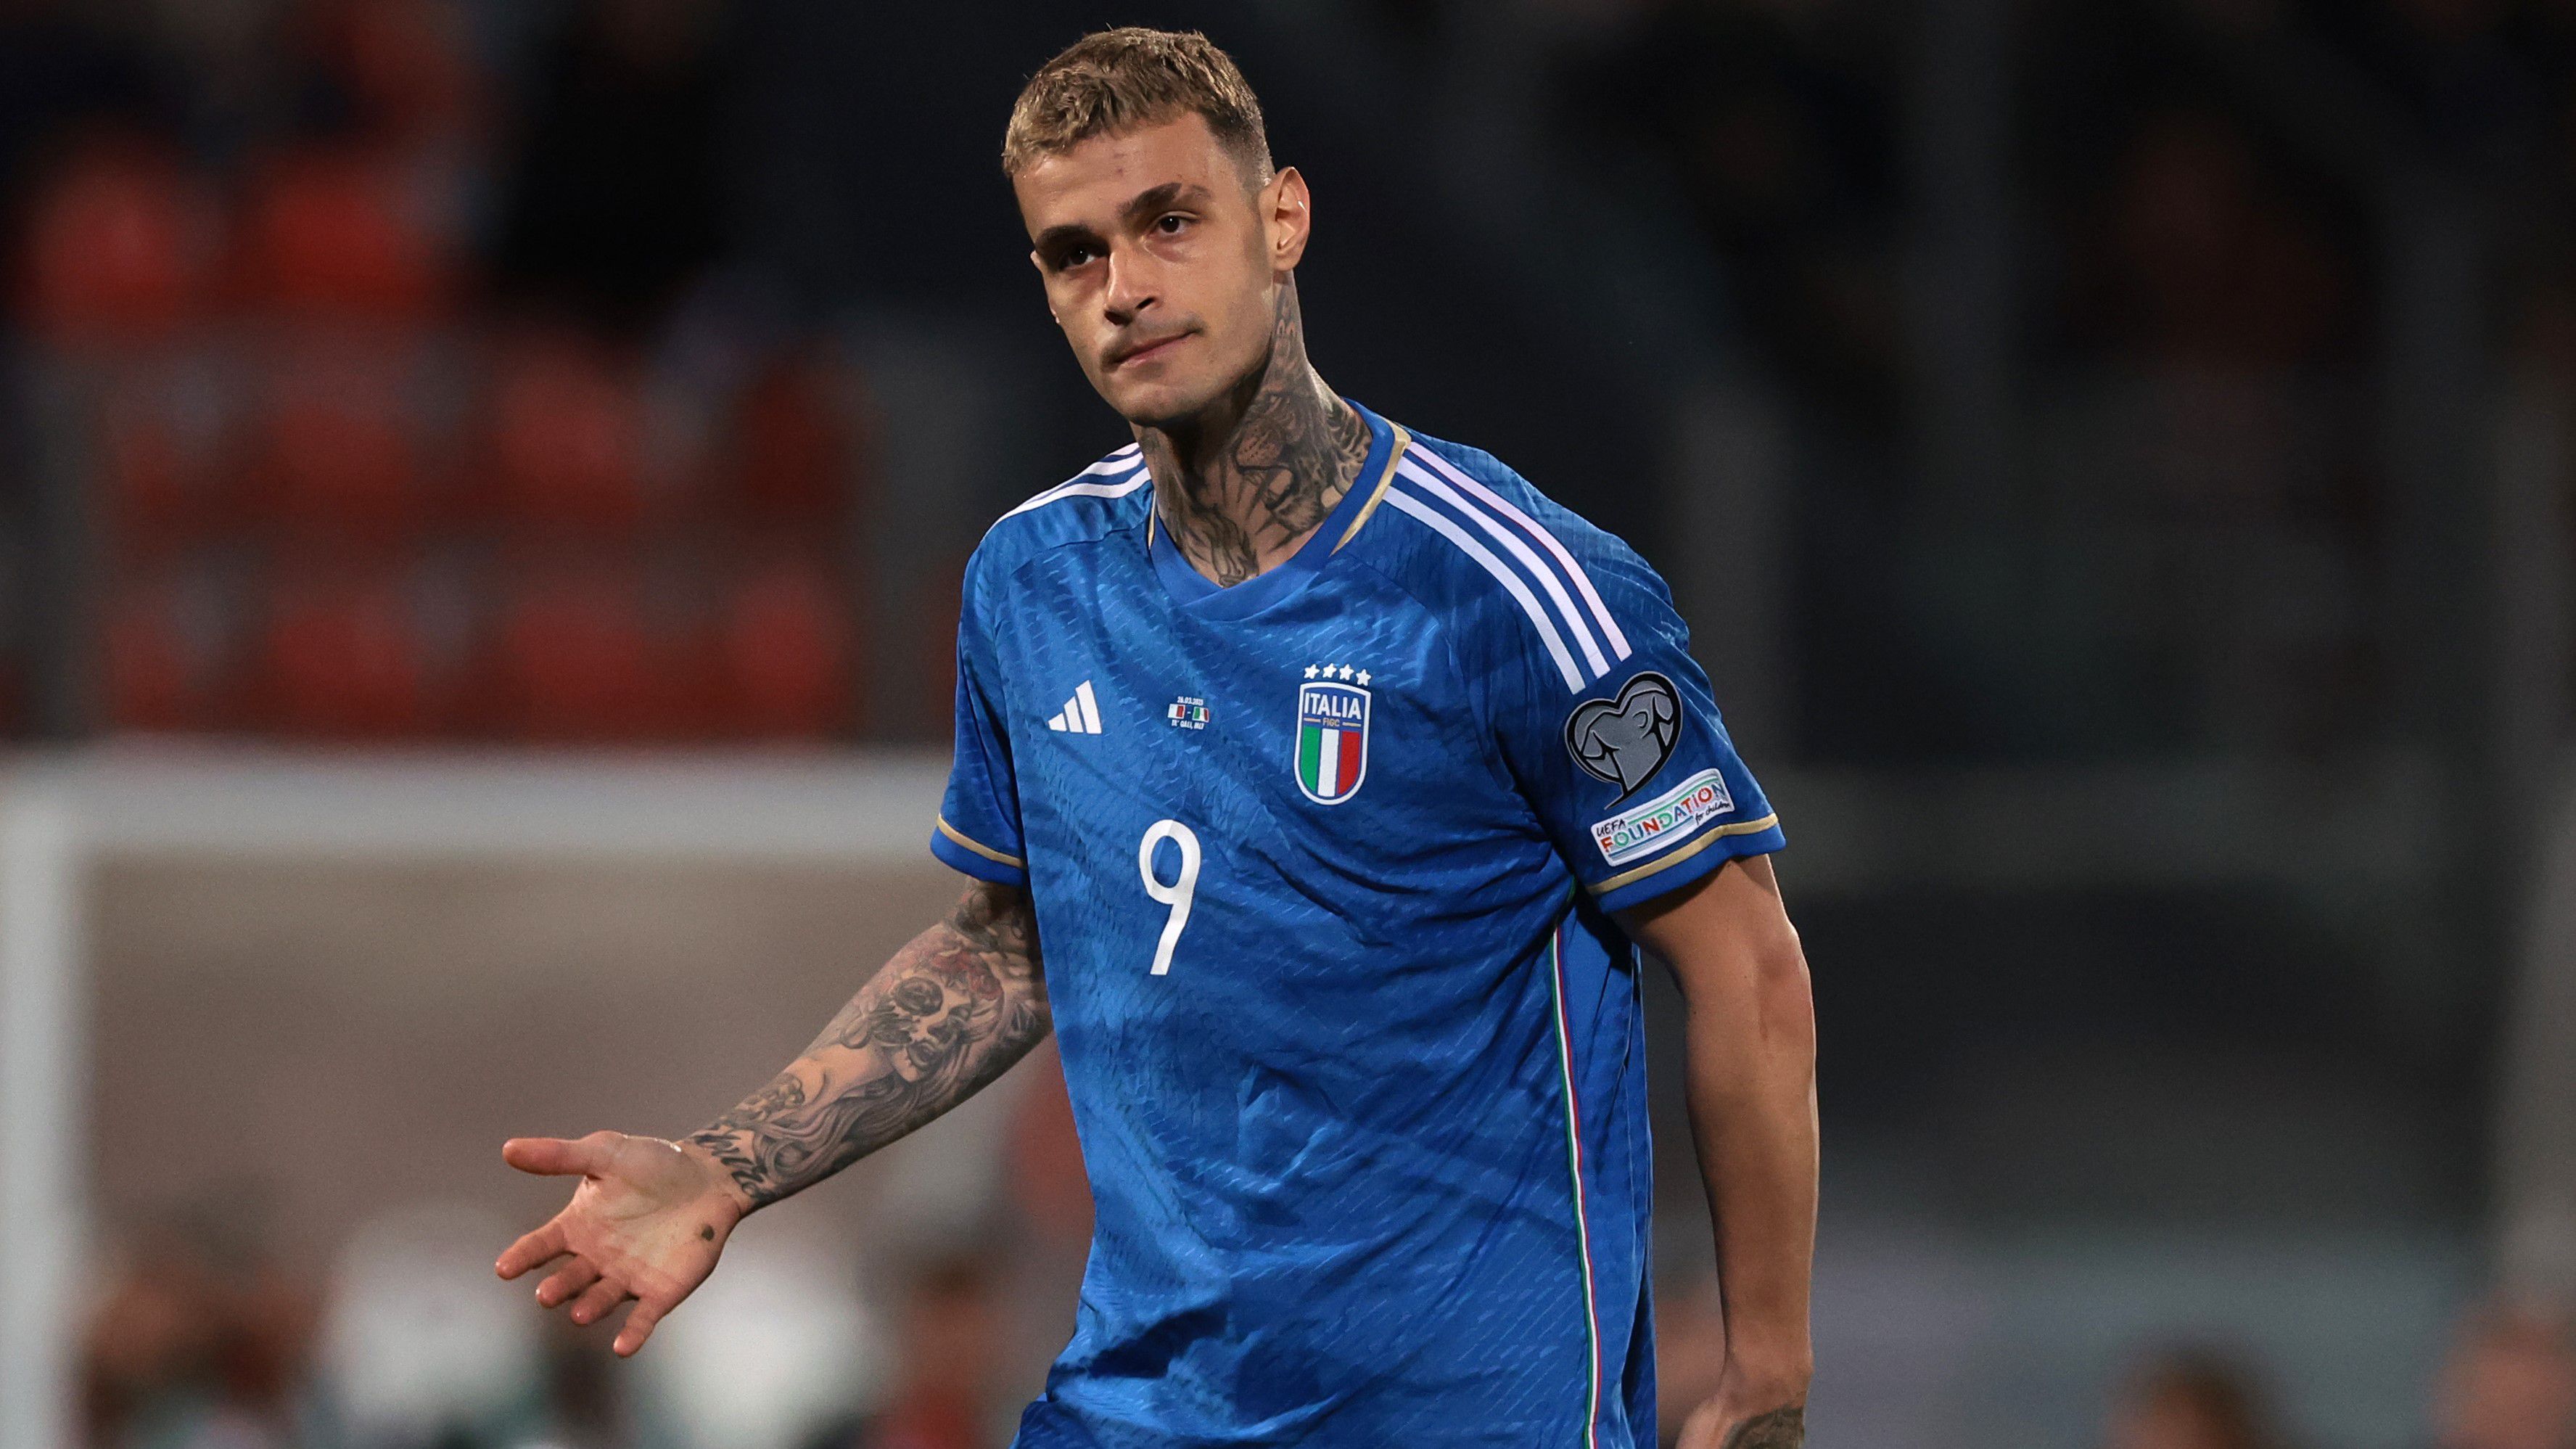 Olasz válogatott támadóval erősített az Atalanta – hivatalos